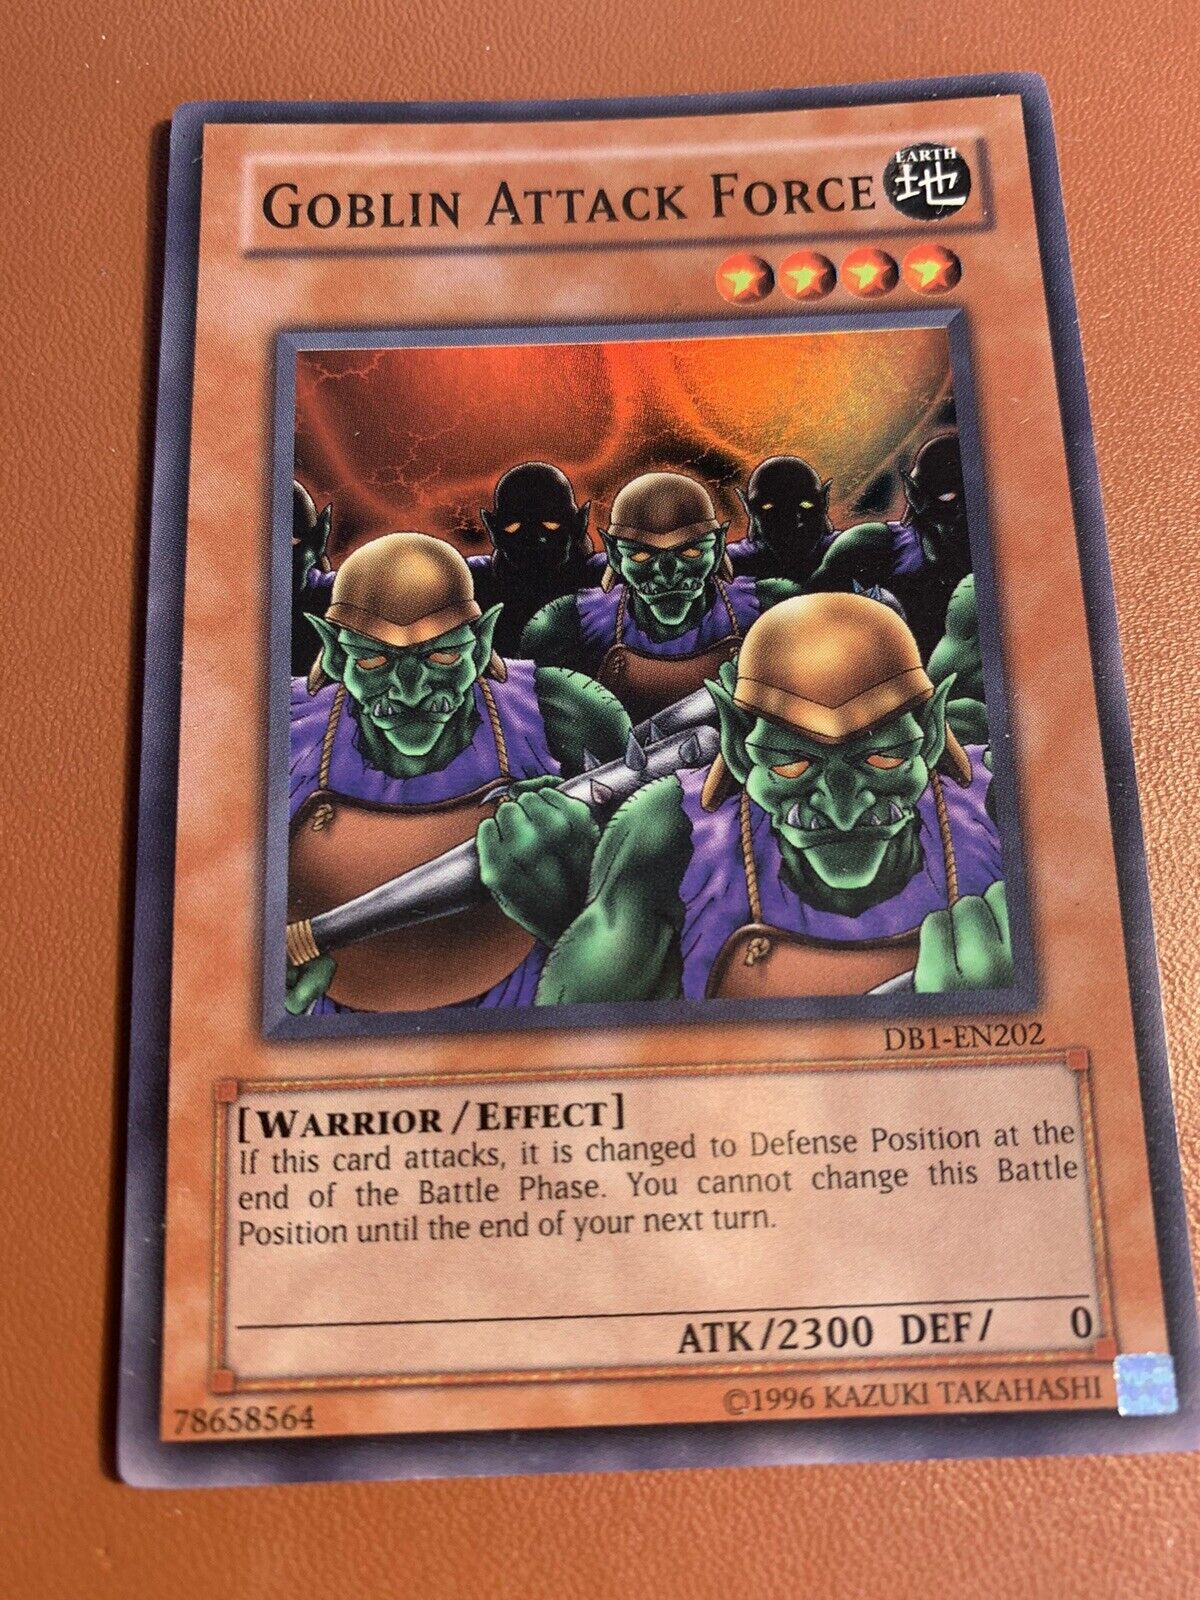 Goblin Attack Force DB1-EN202 Super Rare Yugioh Card